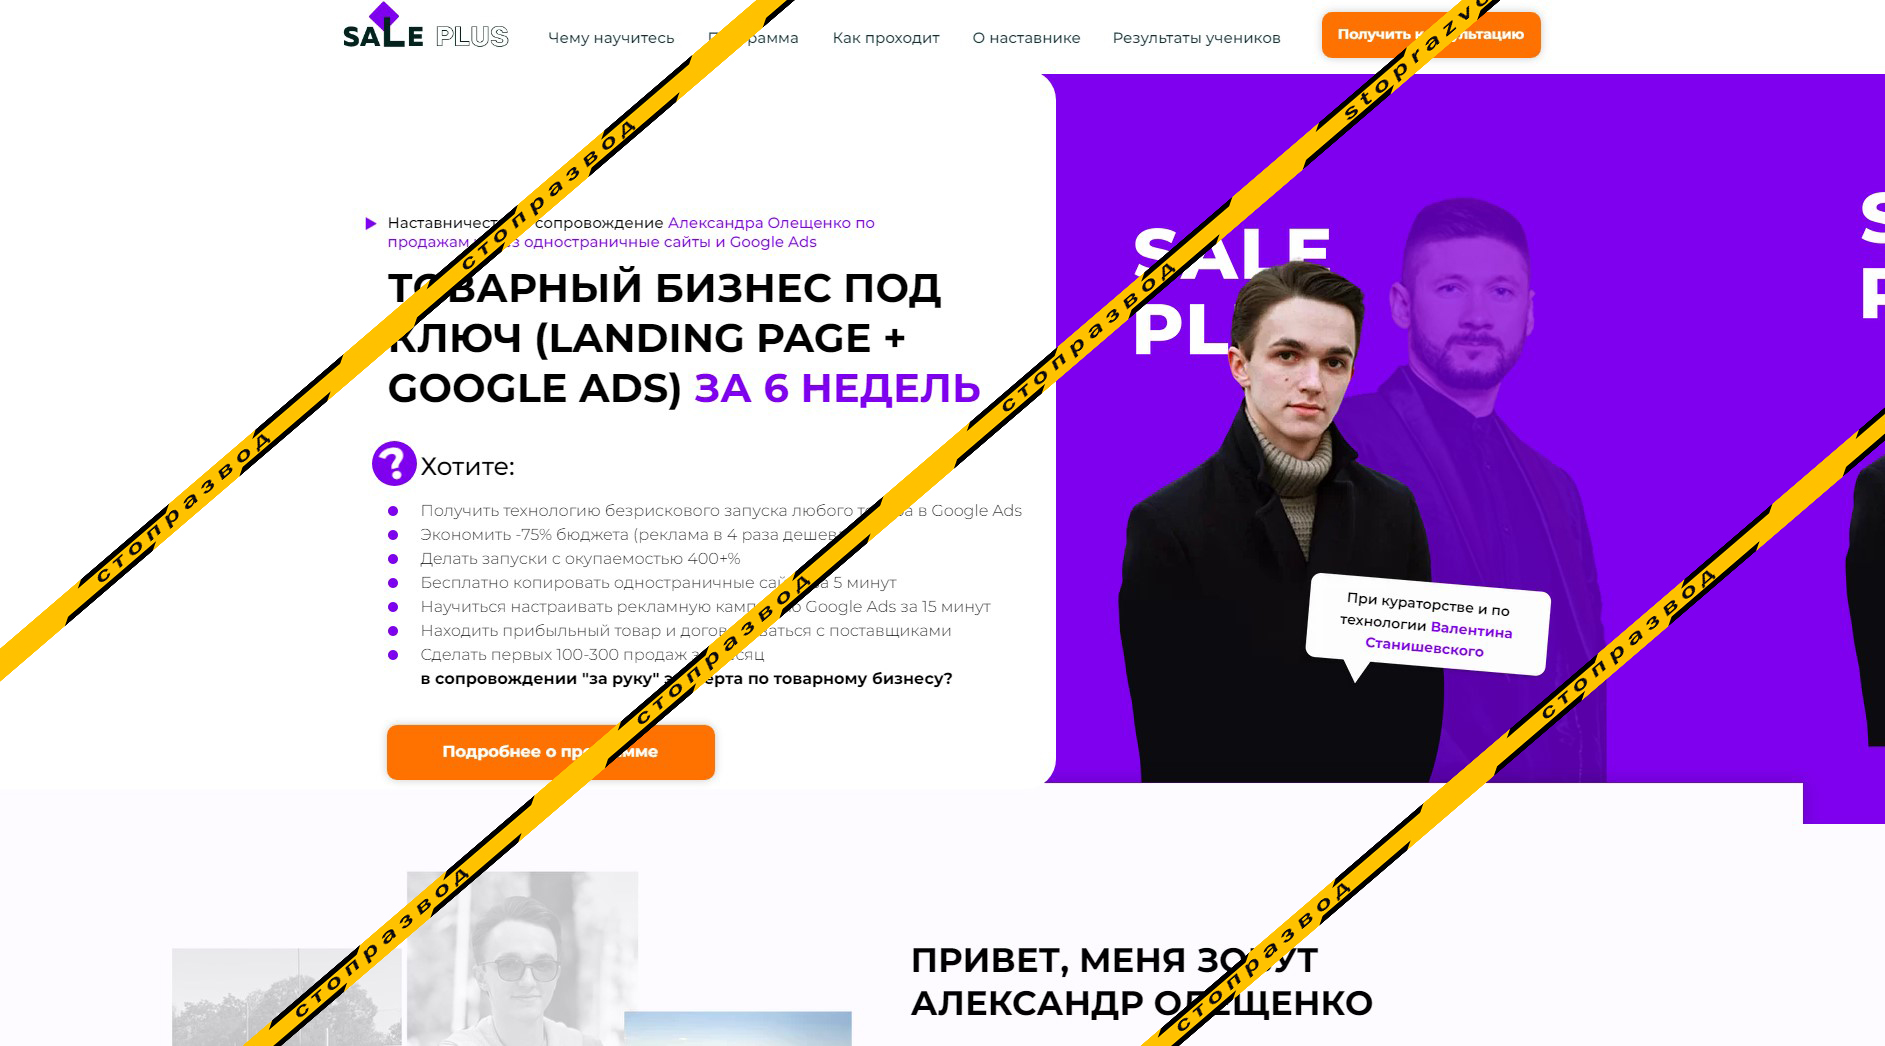 Сайт мошенника Александа Олещенко